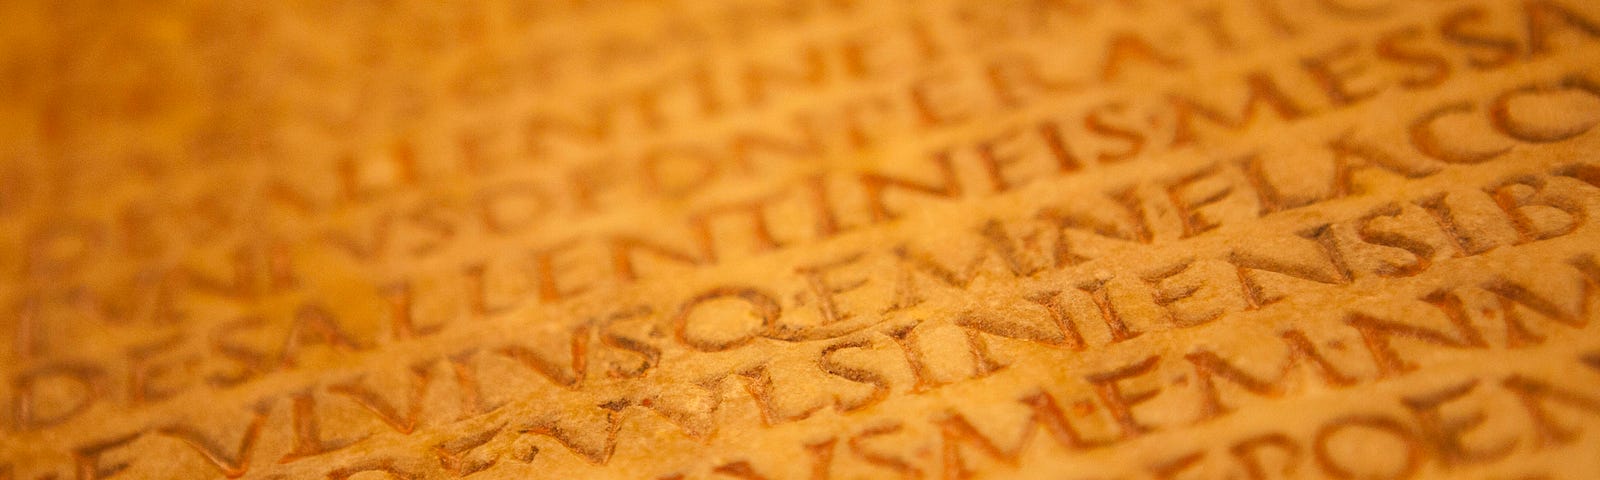 A photo of an ancient golden script